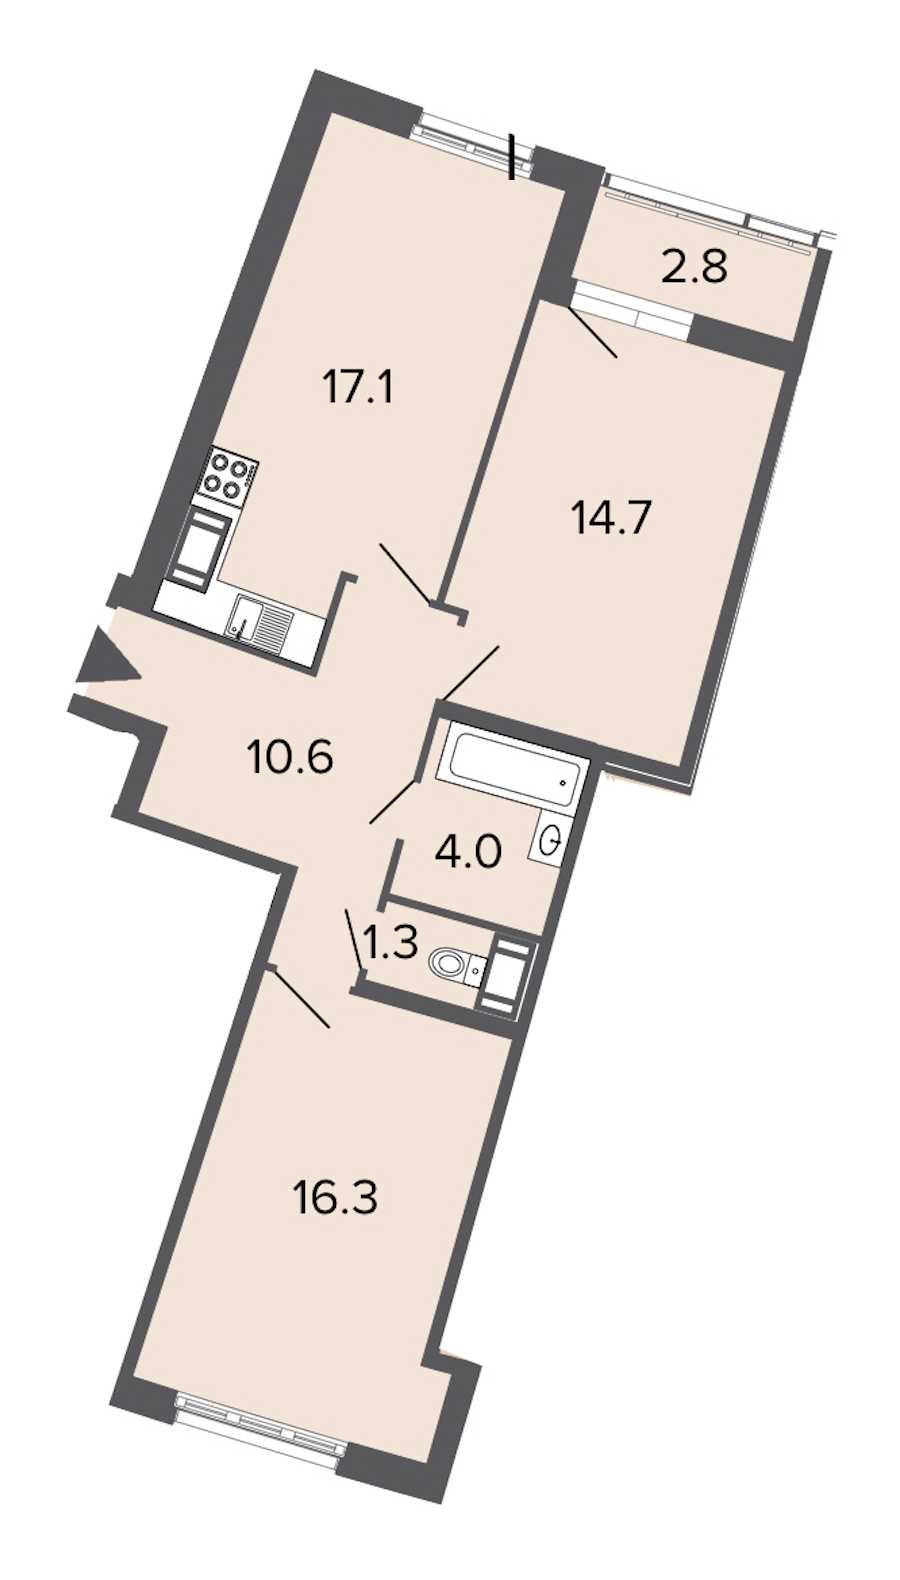 Двухкомнатная квартира в : площадь 64 м2 , этаж: 14 – купить в Санкт-Петербурге